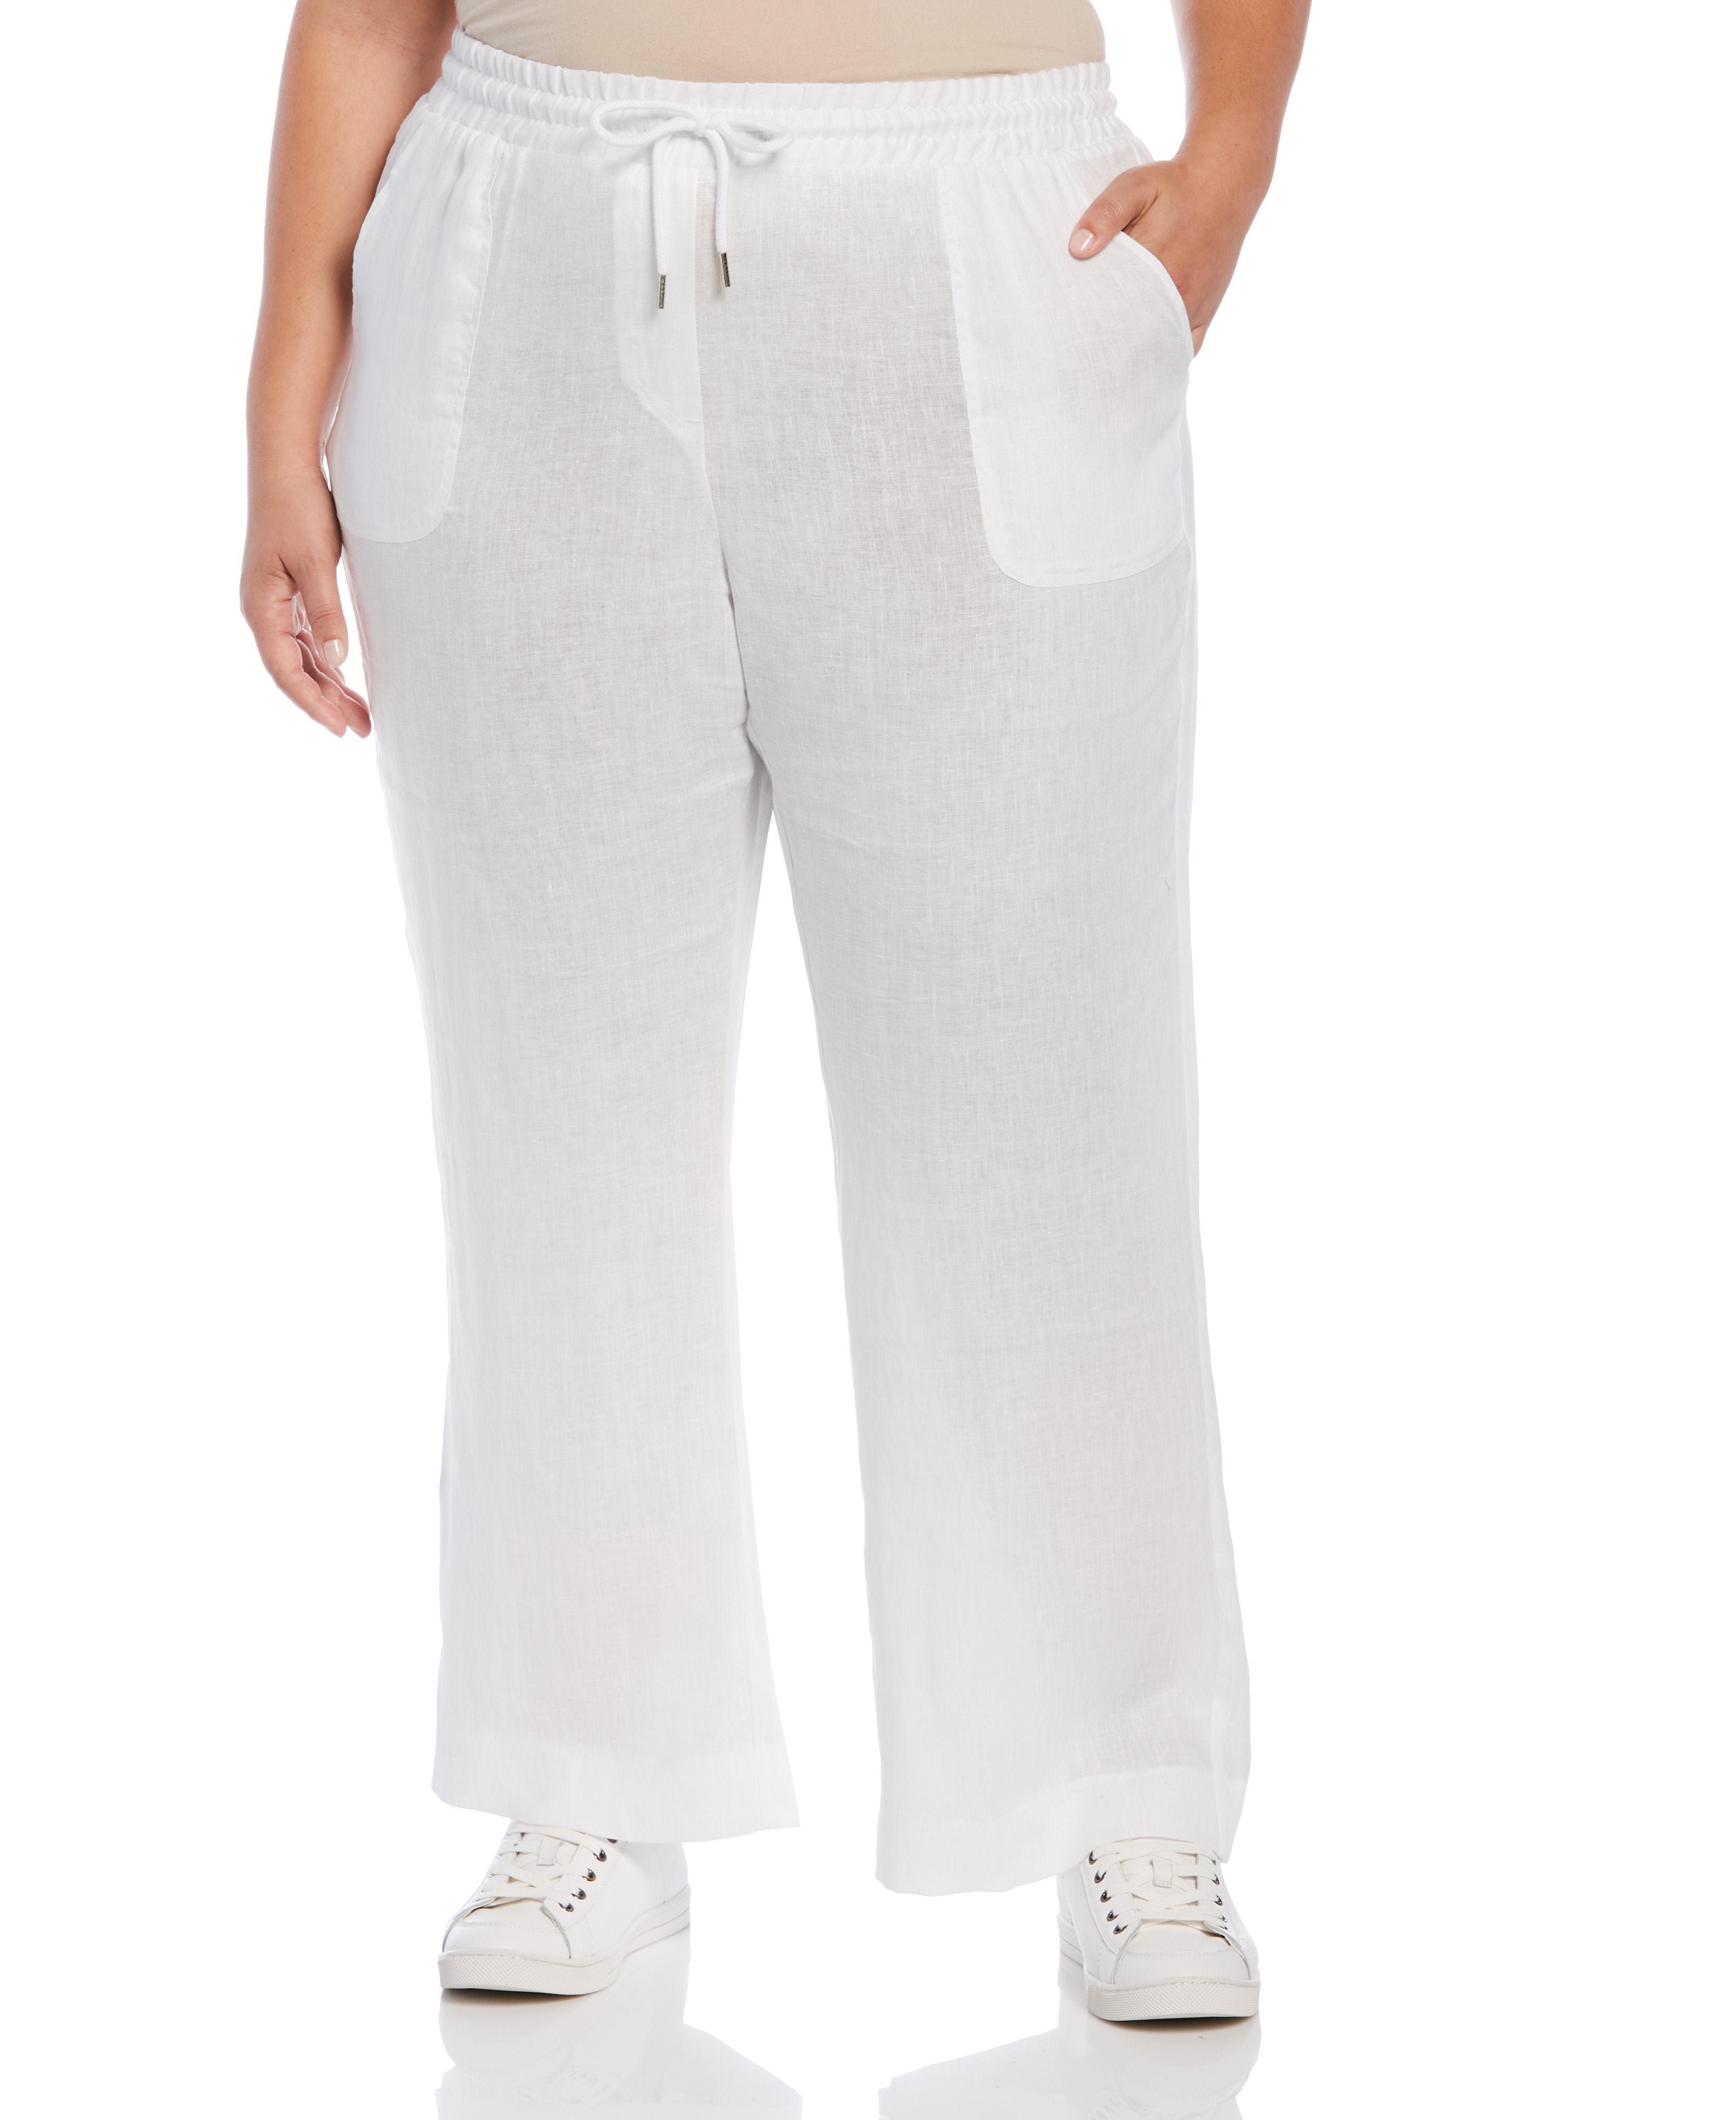 Women's Rafaella White Dress Pants  Linen pants outfit, White linen pants  outfit, White dress pants